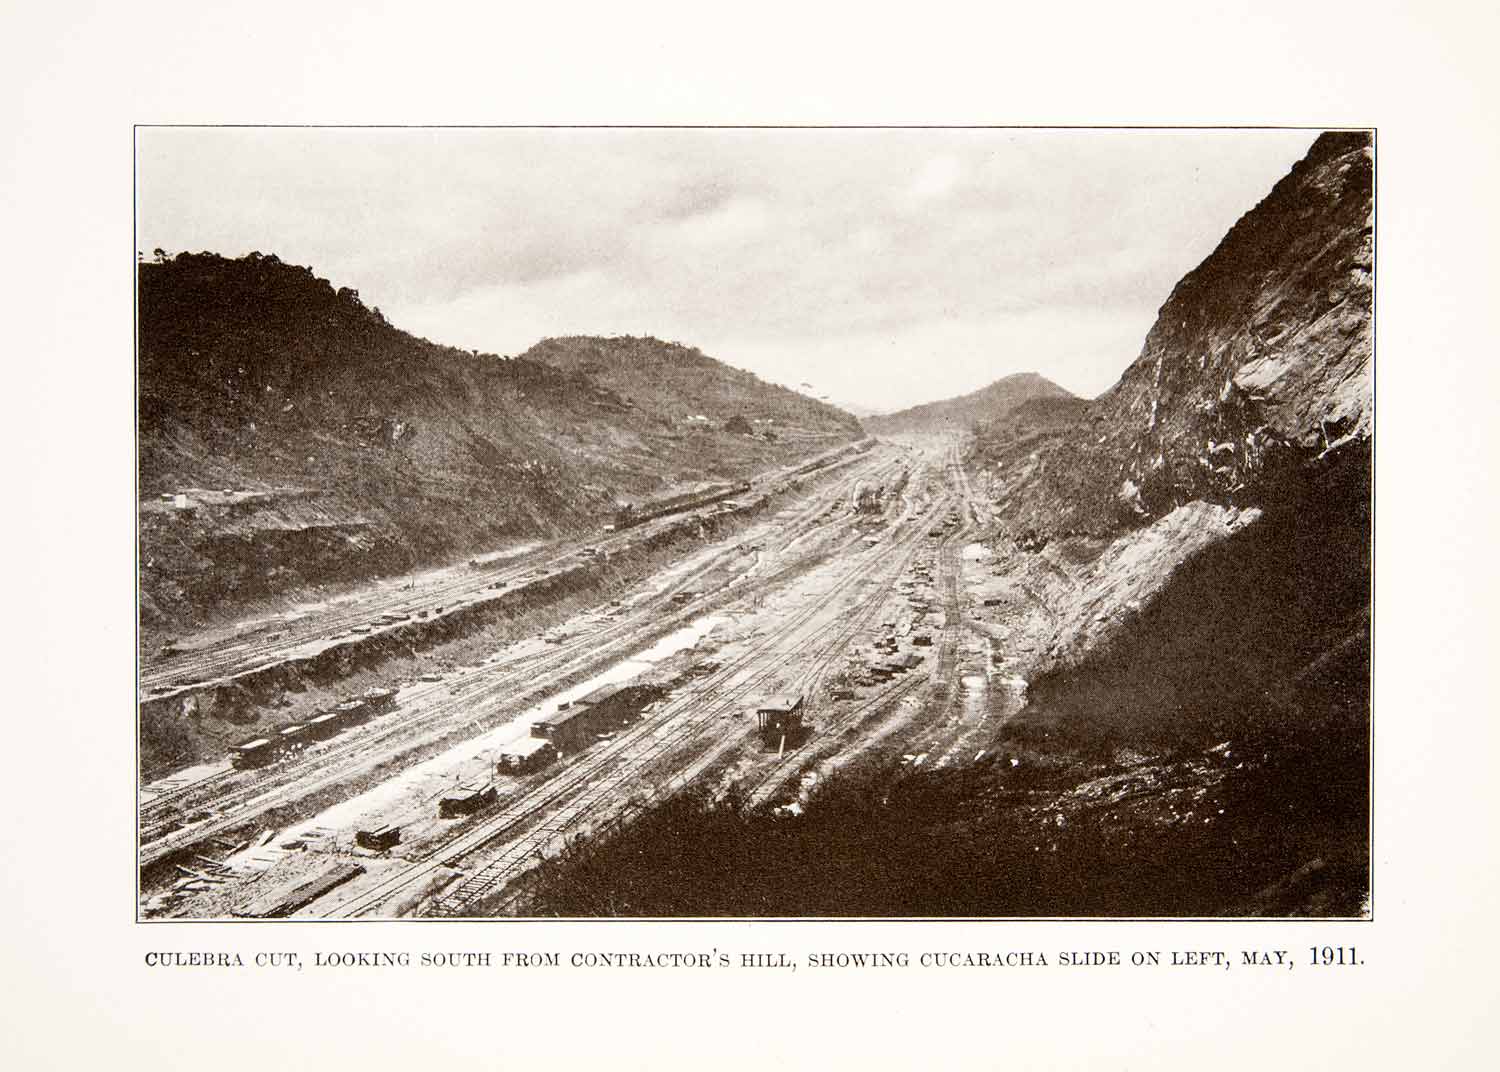 1926 Print Landscape Culebra Cut Contractors Hill Cucaracha Slide Panama XGKC7